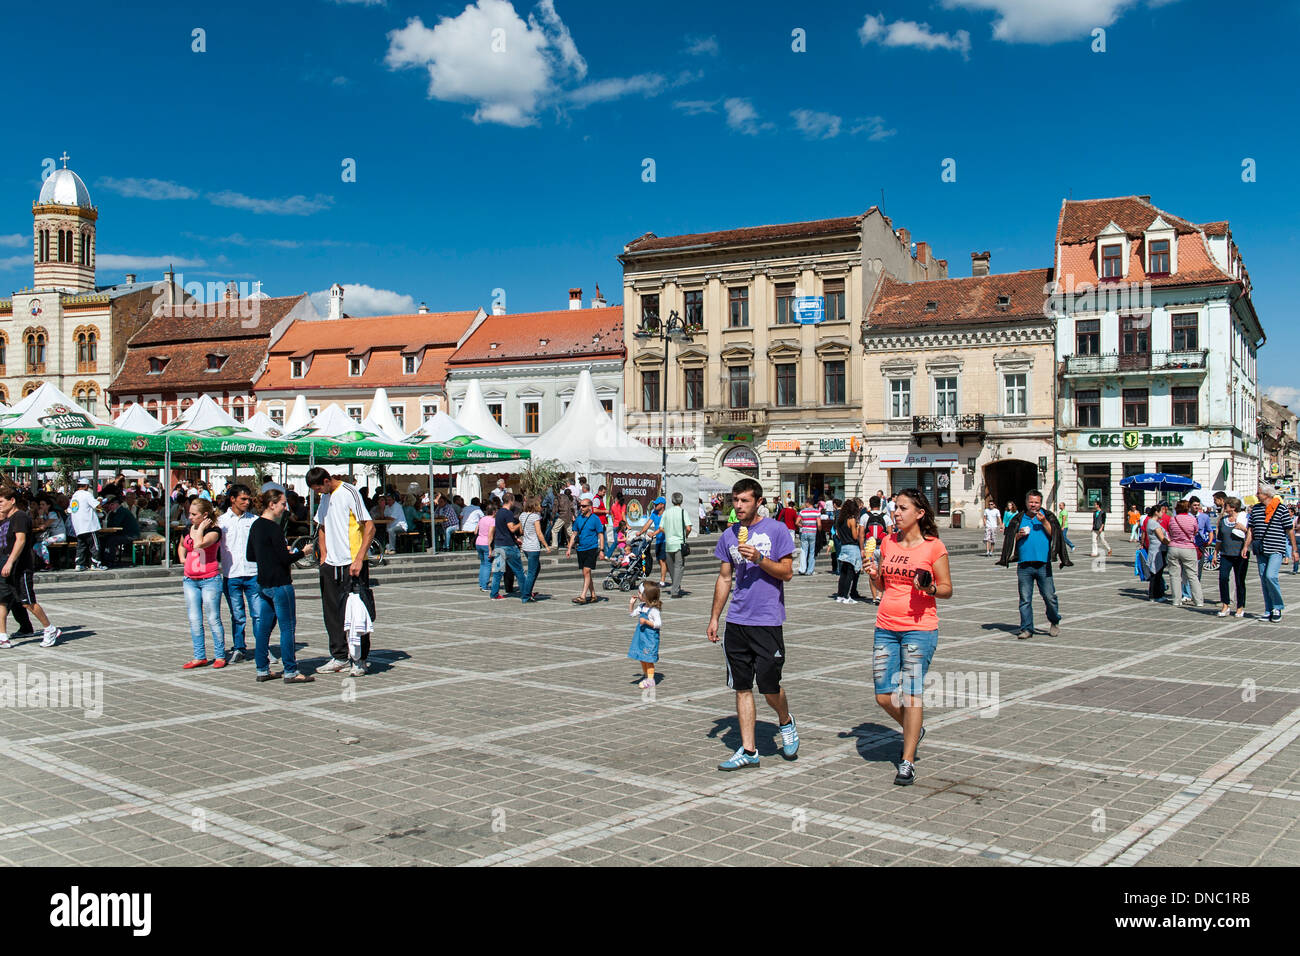 Fußgänger in Kronstadt Rathausplatz (Piața Sfatului) in der Altstadt in Brasov, einer Stadt in der Region Transsilvanien Rumänien. Stockfoto